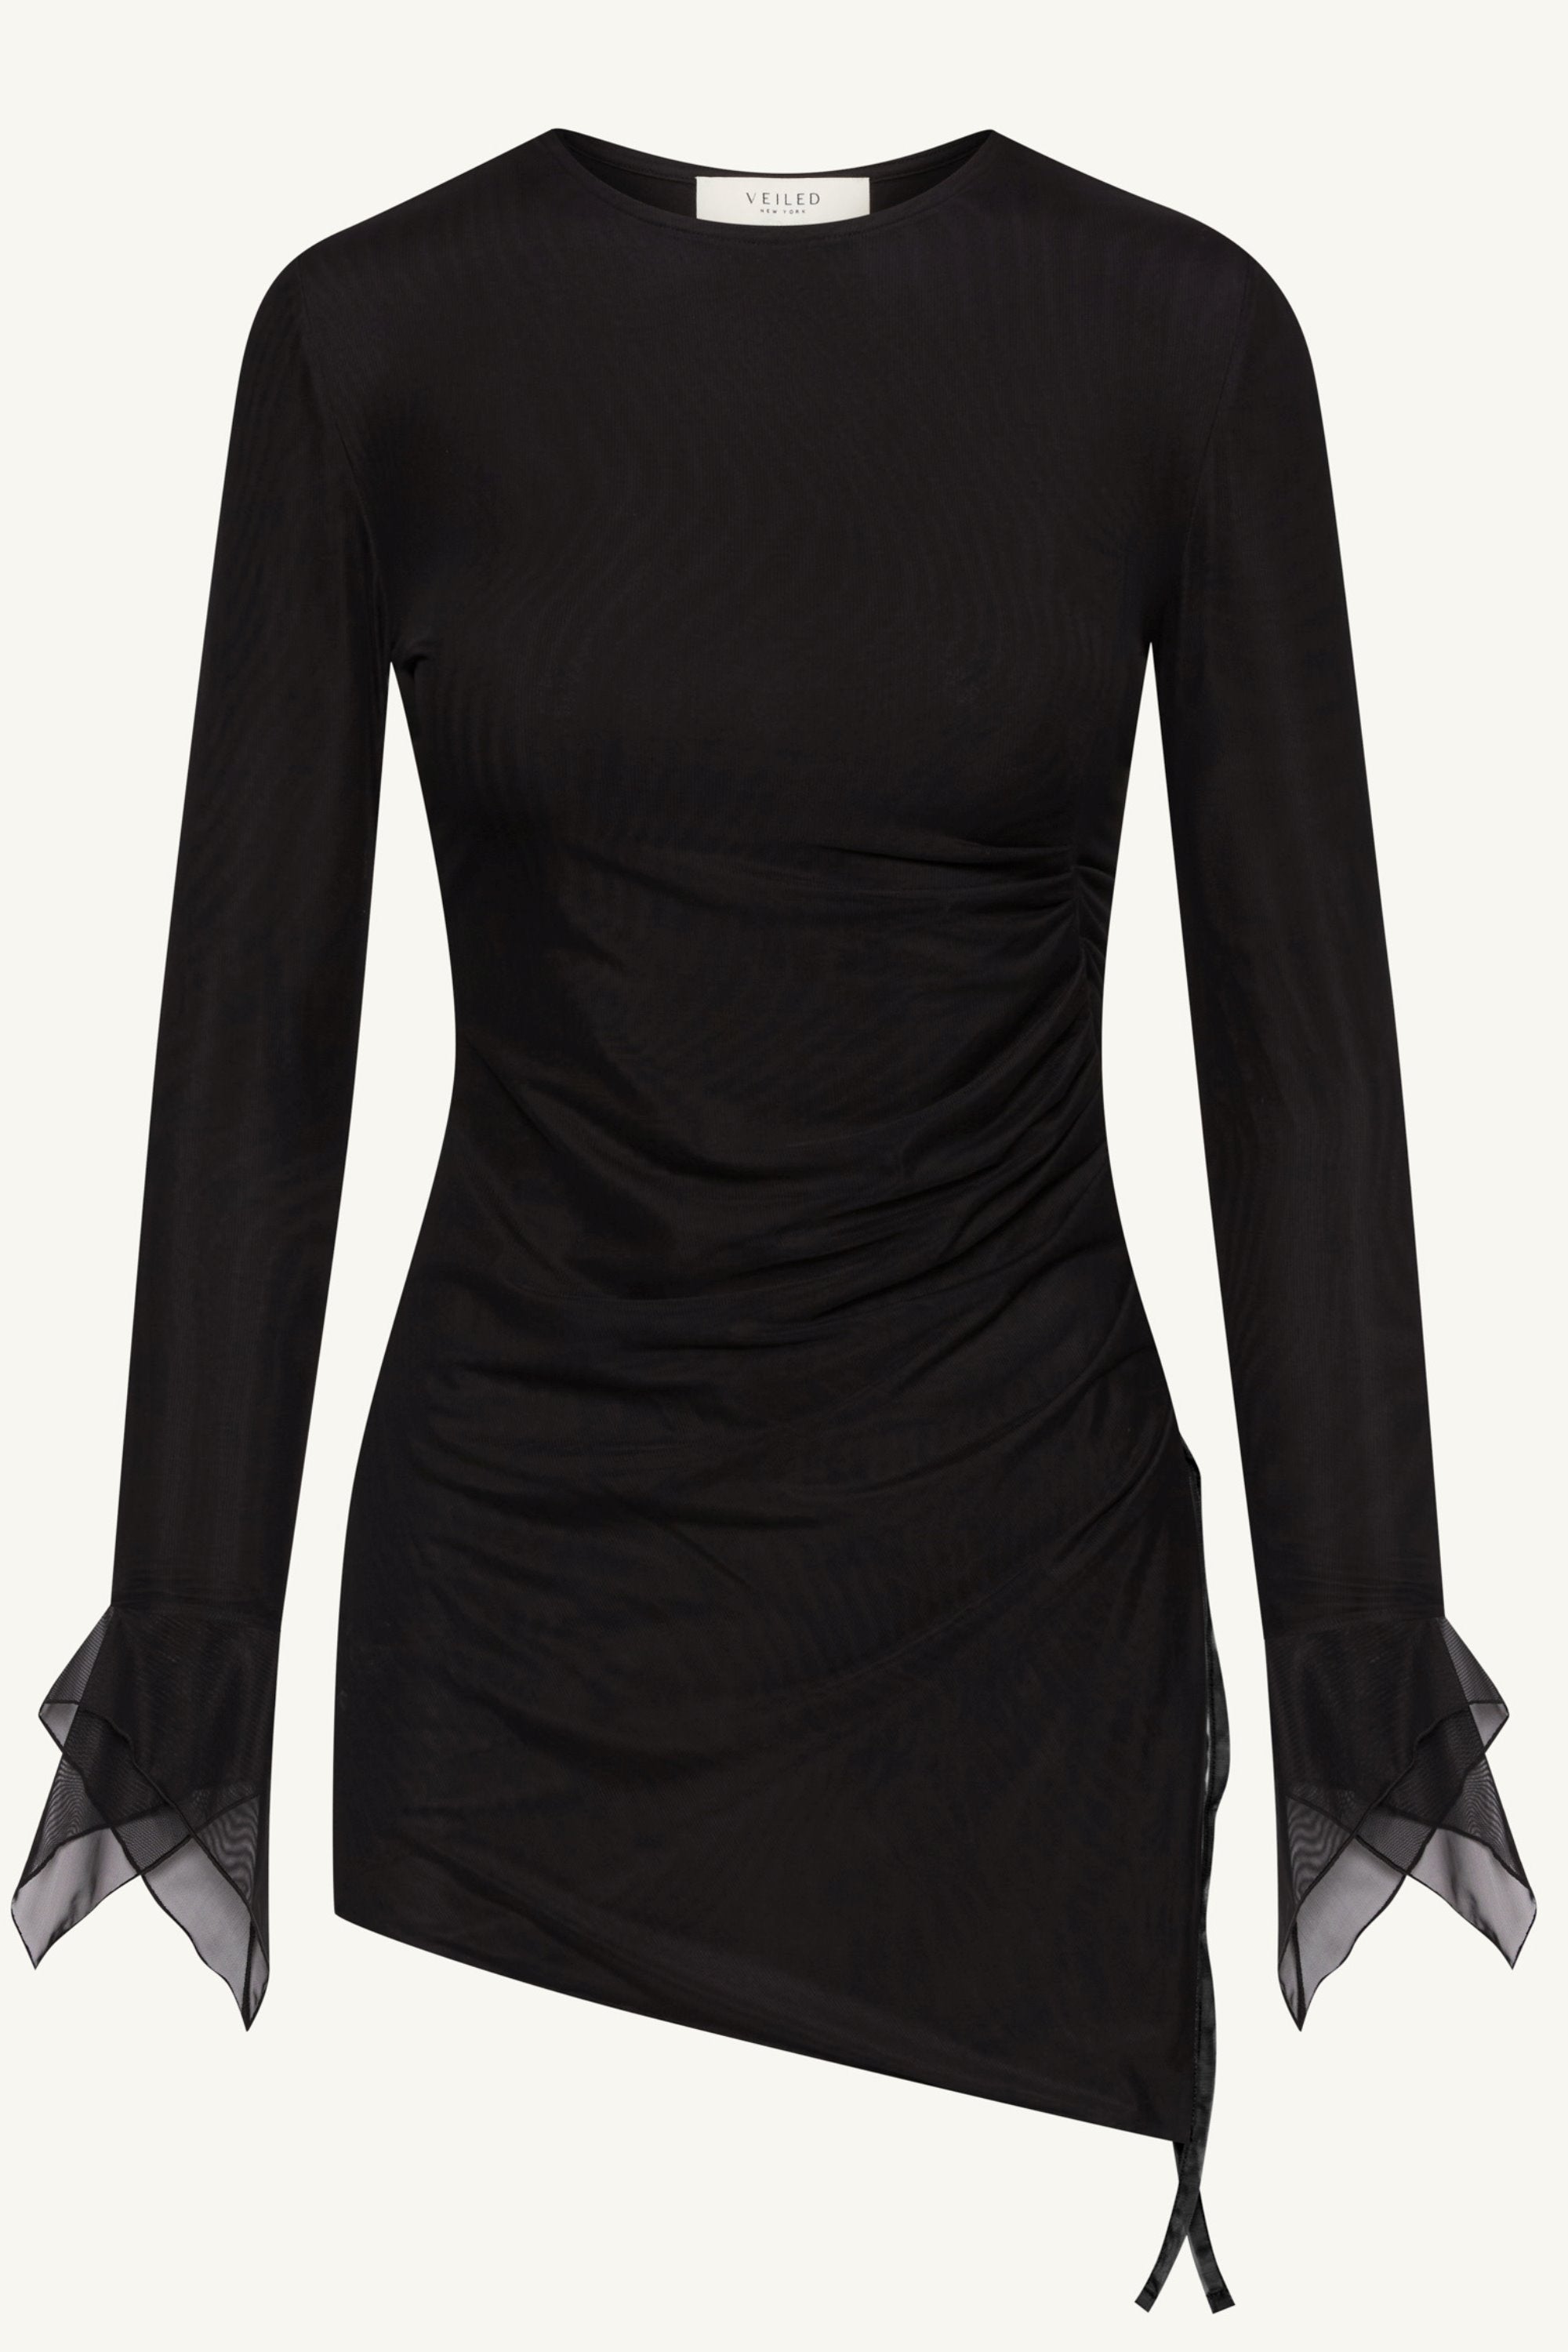 Monica Side Slit Mesh Top - Black Clothing Veiled 